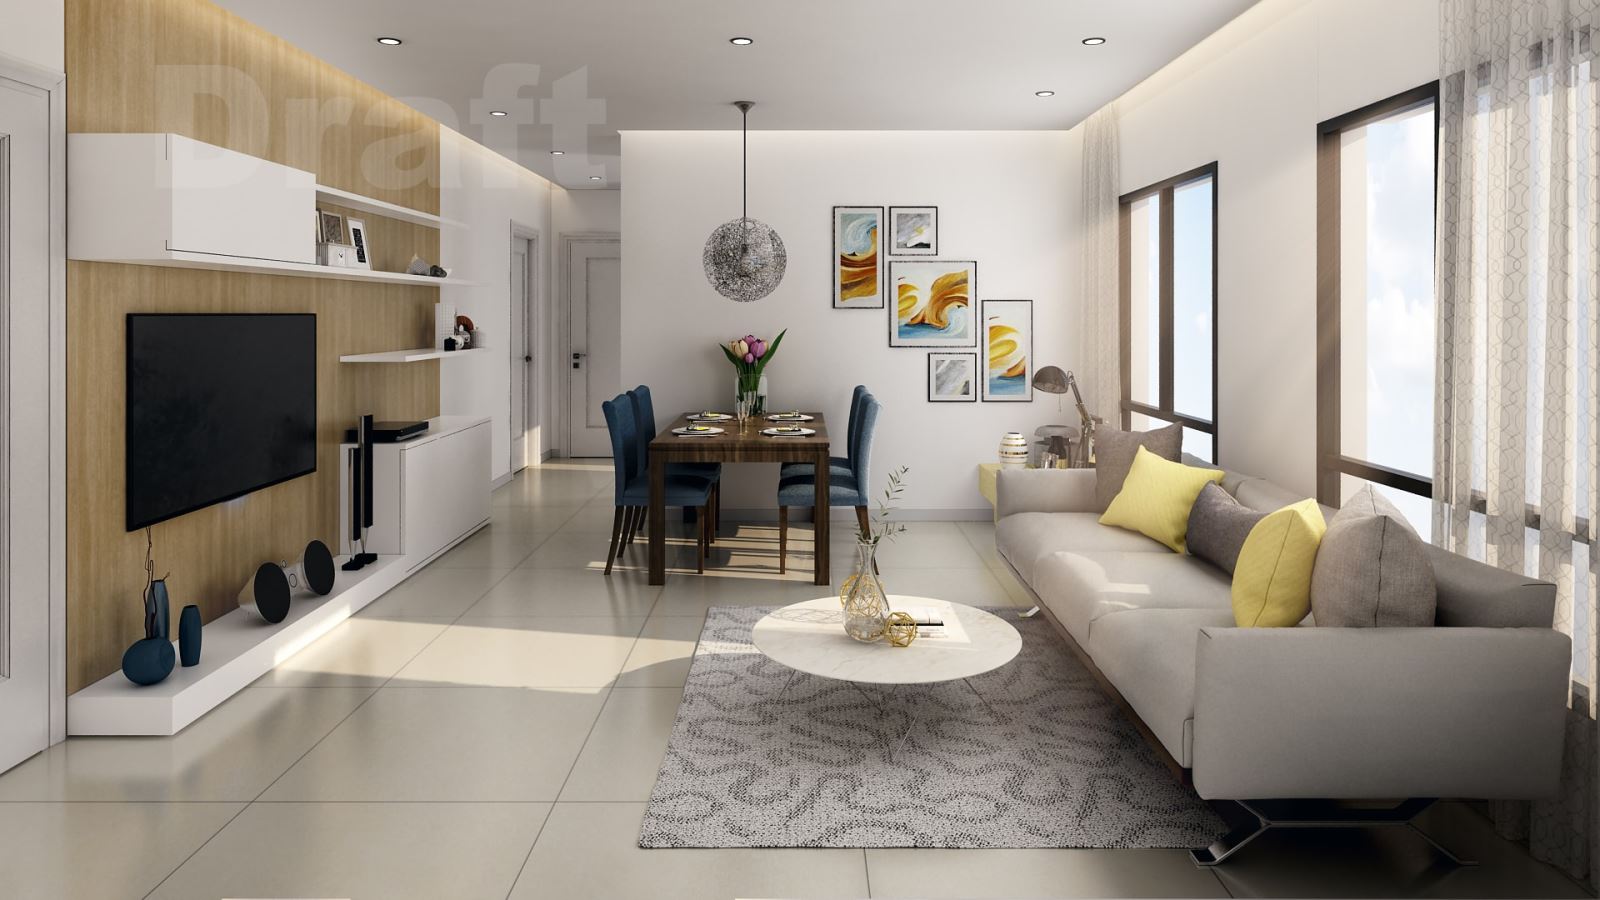 Những phong cách thiết kế nội thất chung cư đẹp hoàn mỹ